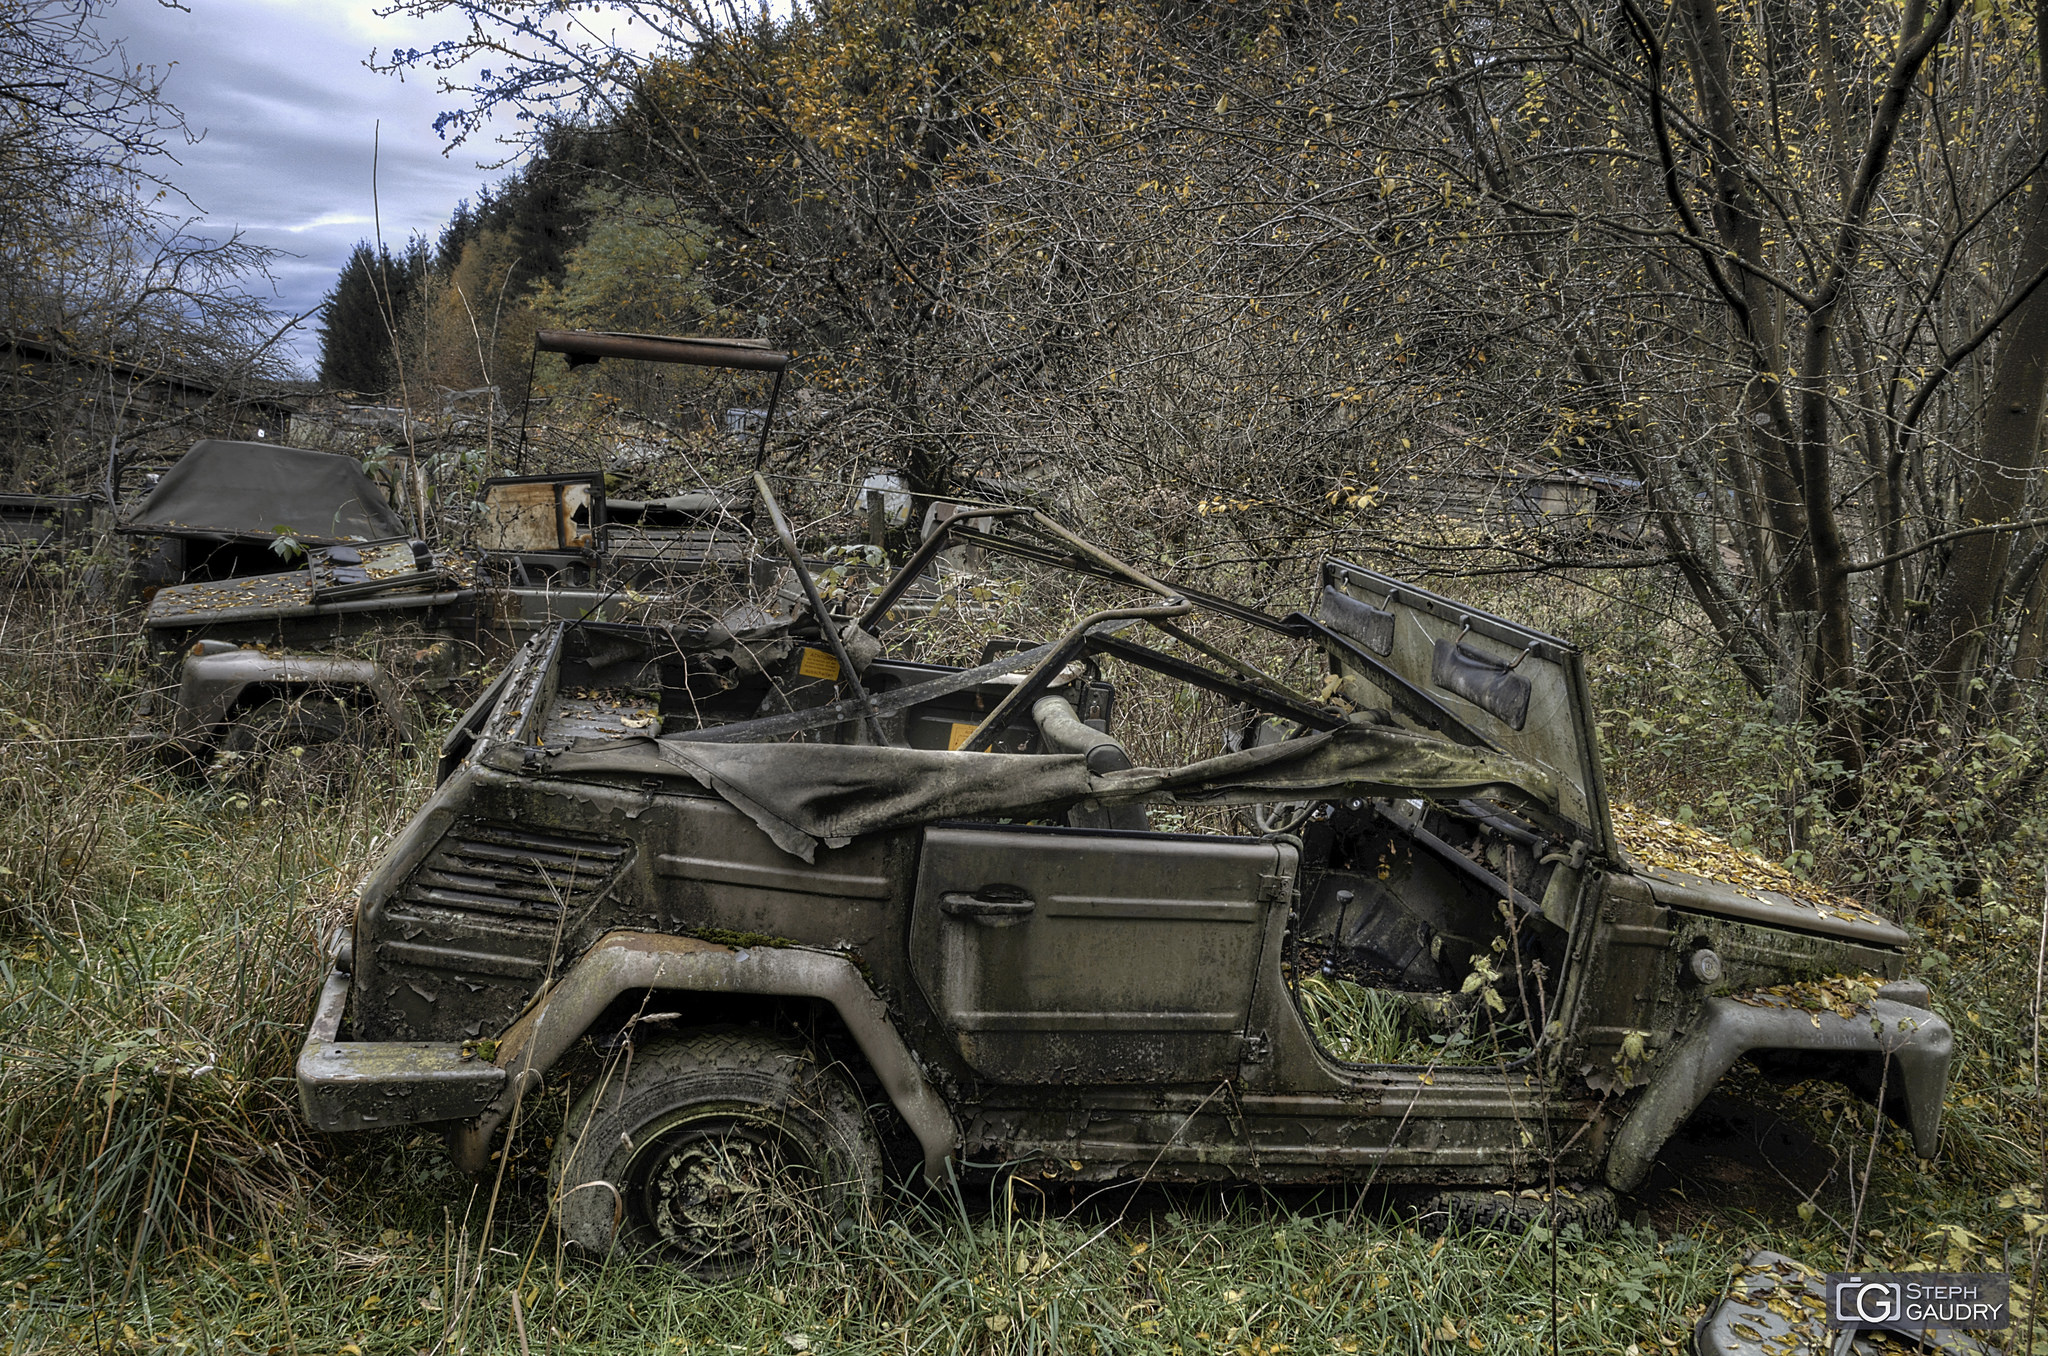 Jeeps graveyard [Klicken Sie hier, um die Diashow zu starten]